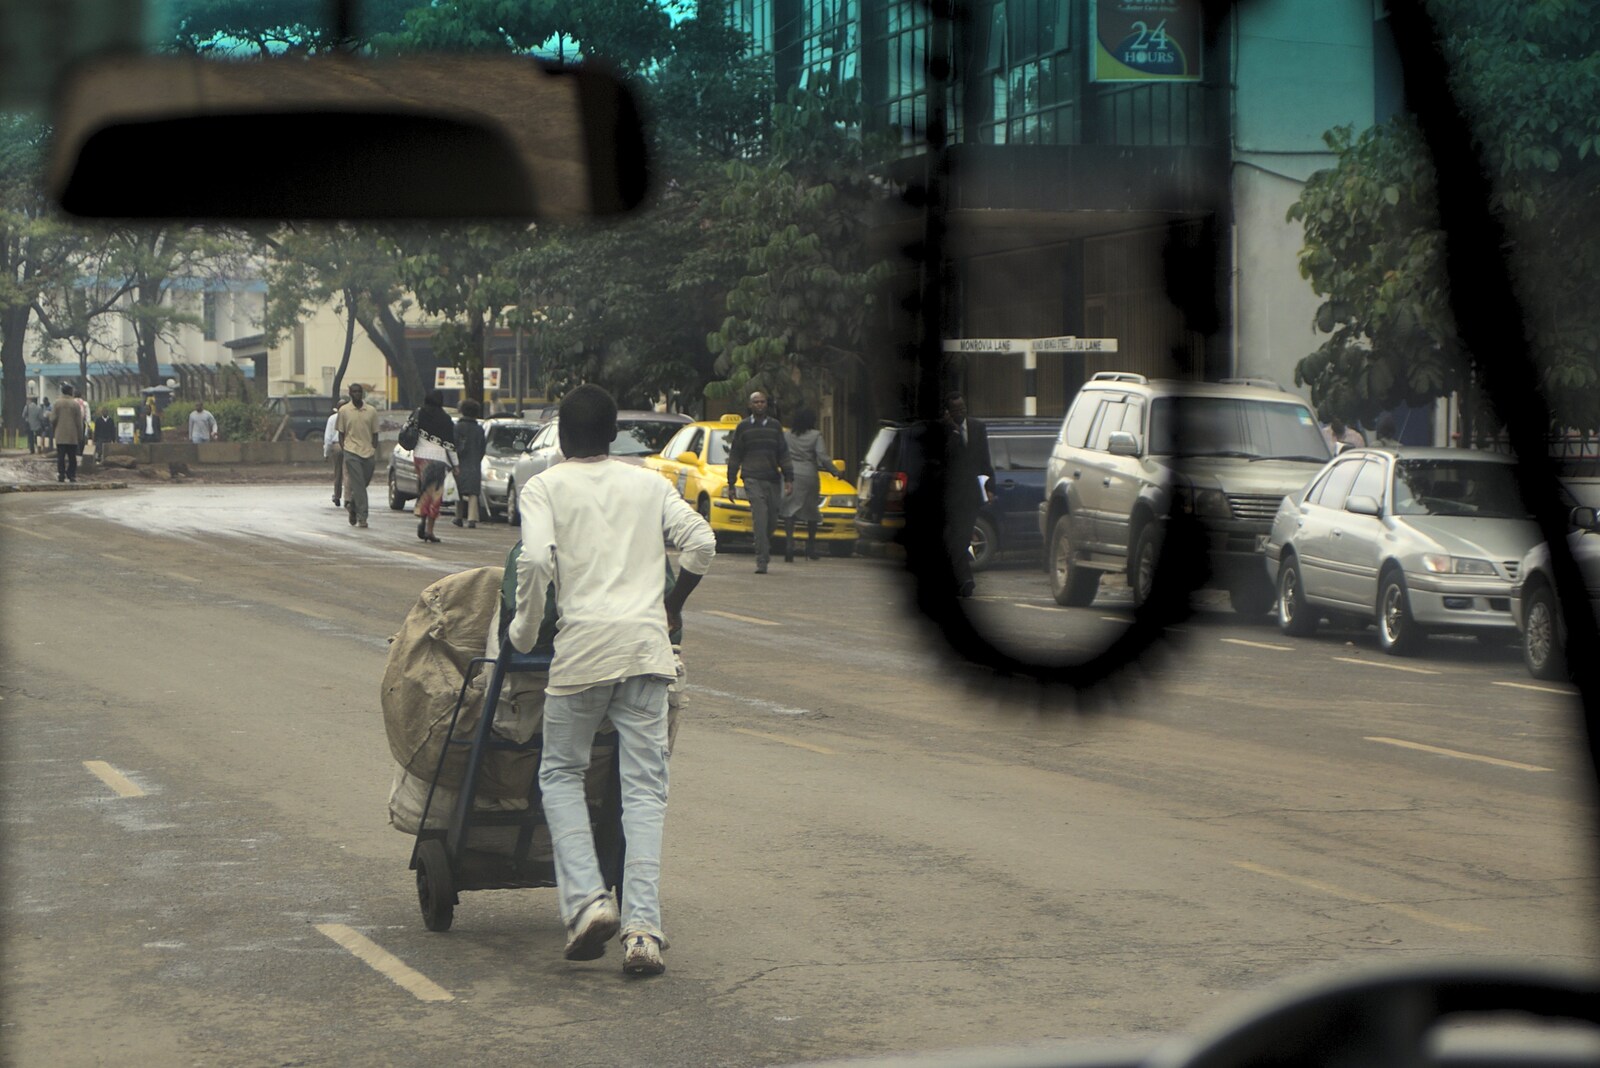 Pushing sack barrows on the street from Nairobi and the Road to Maasai Mara, Kenya, Africa - 1st November 2010